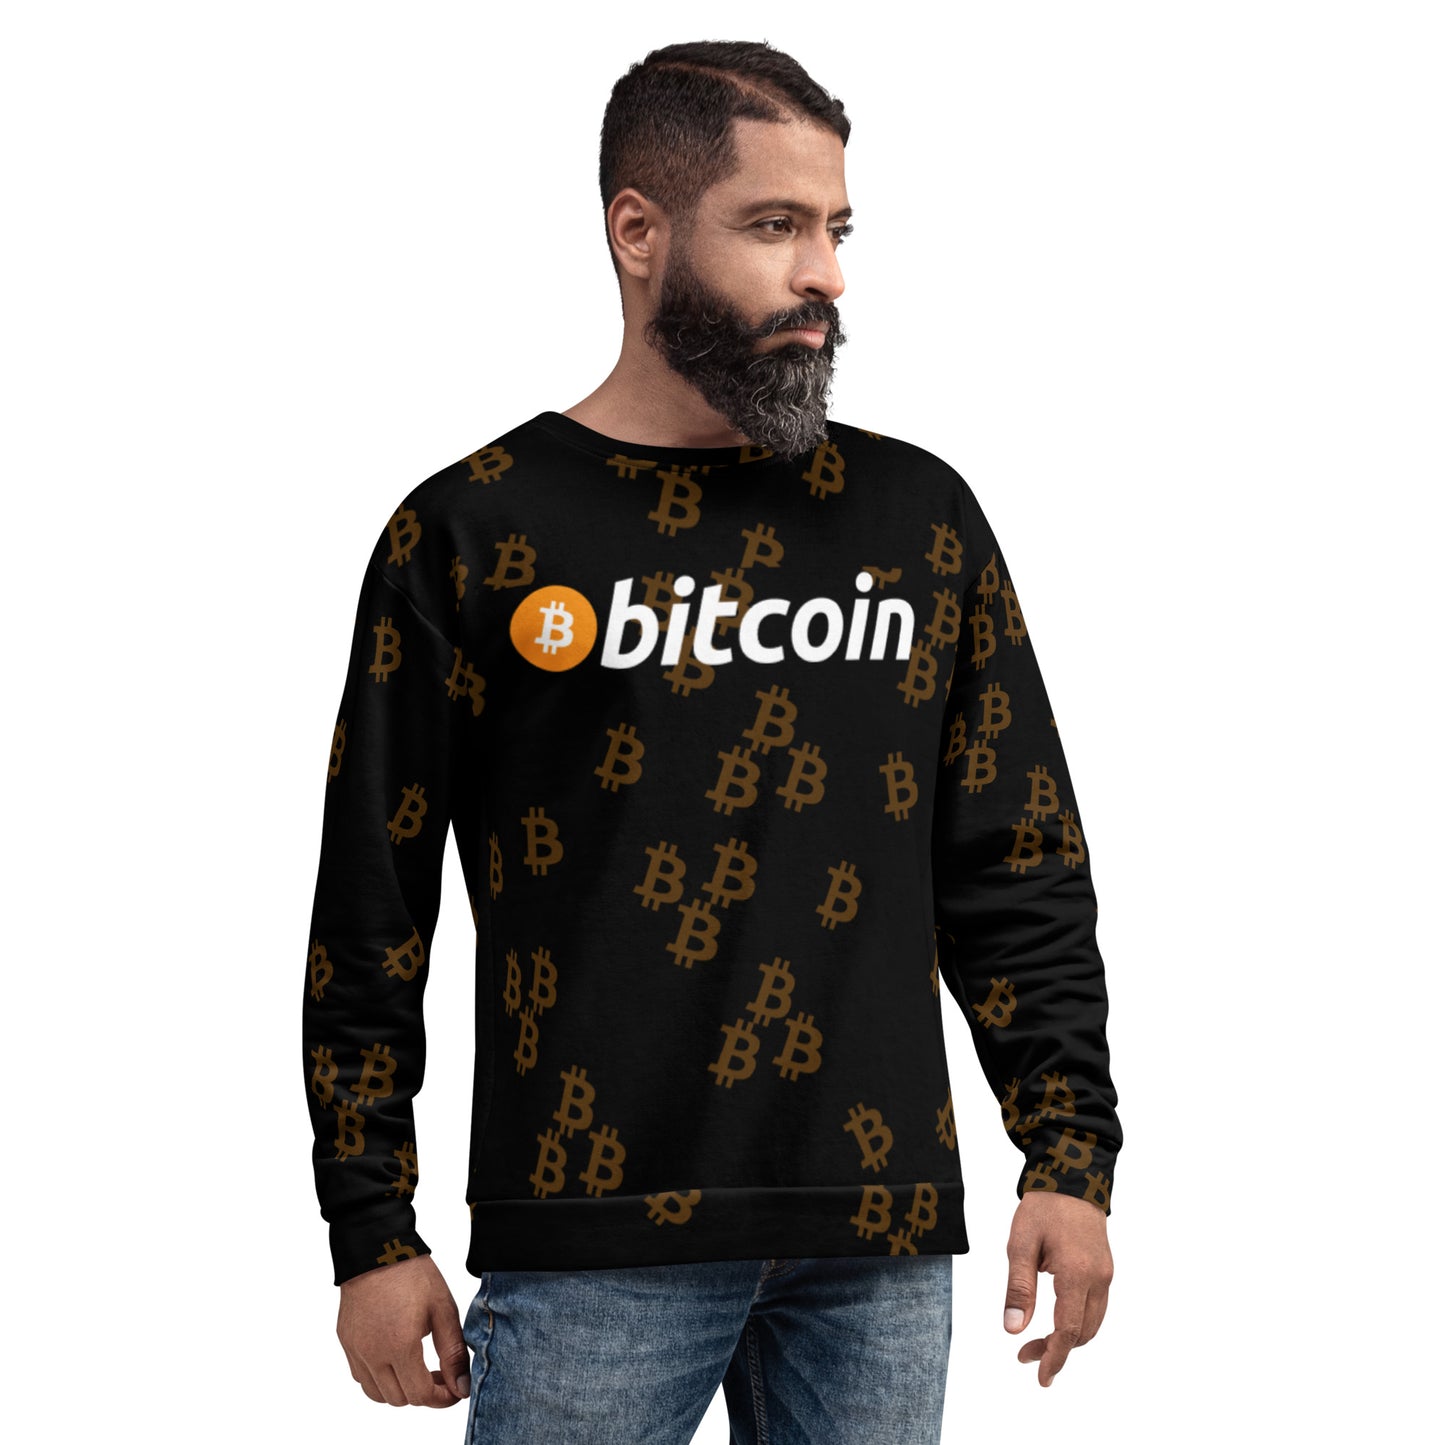 Bitcoin Urban Sweatshirt